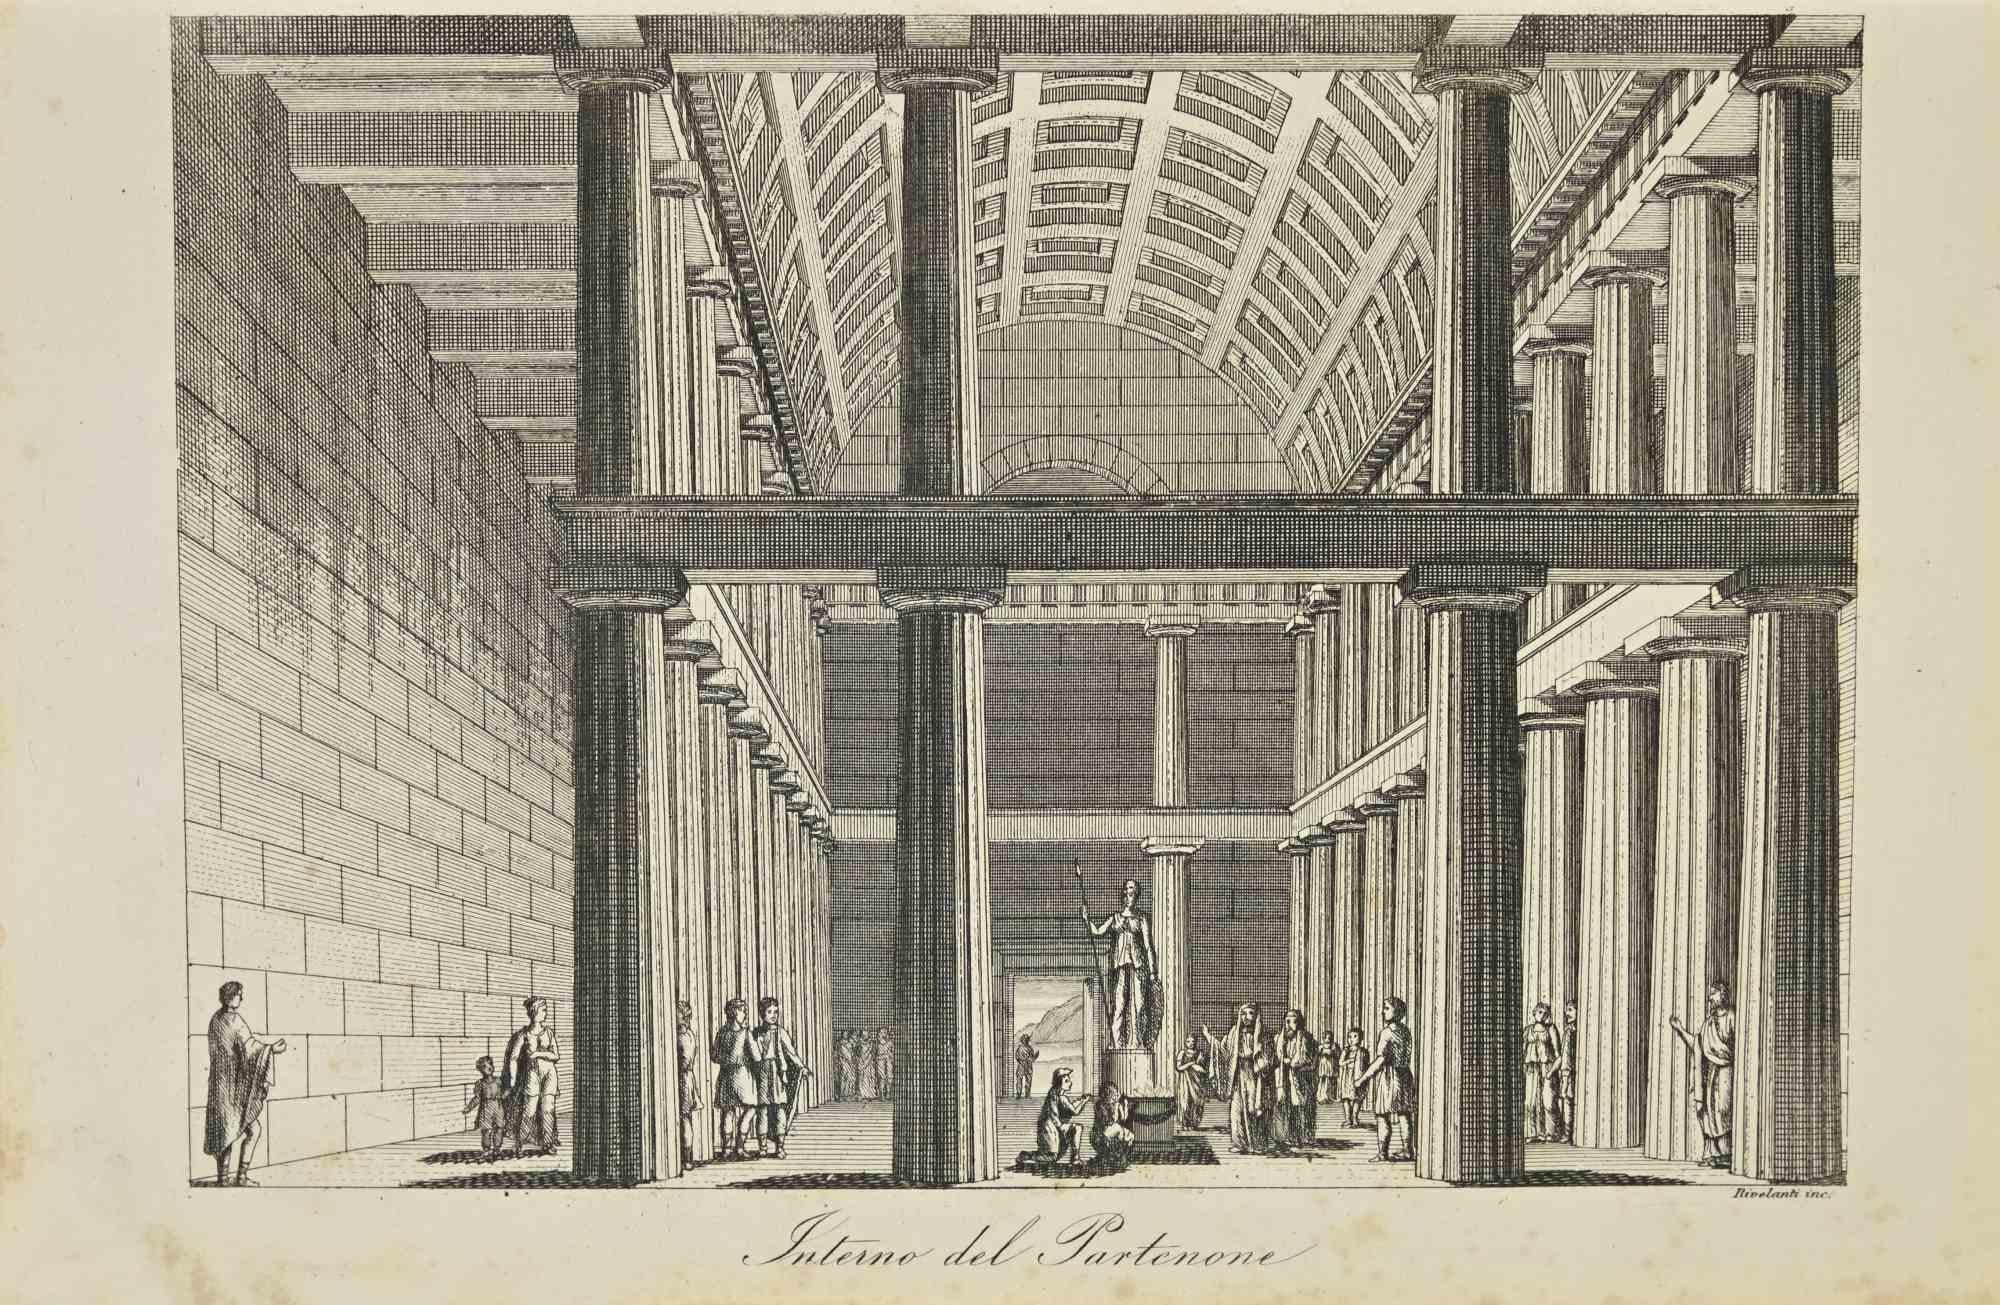 Unknown Interior Print - Interior of the Parthenon - Lithograph - 1862